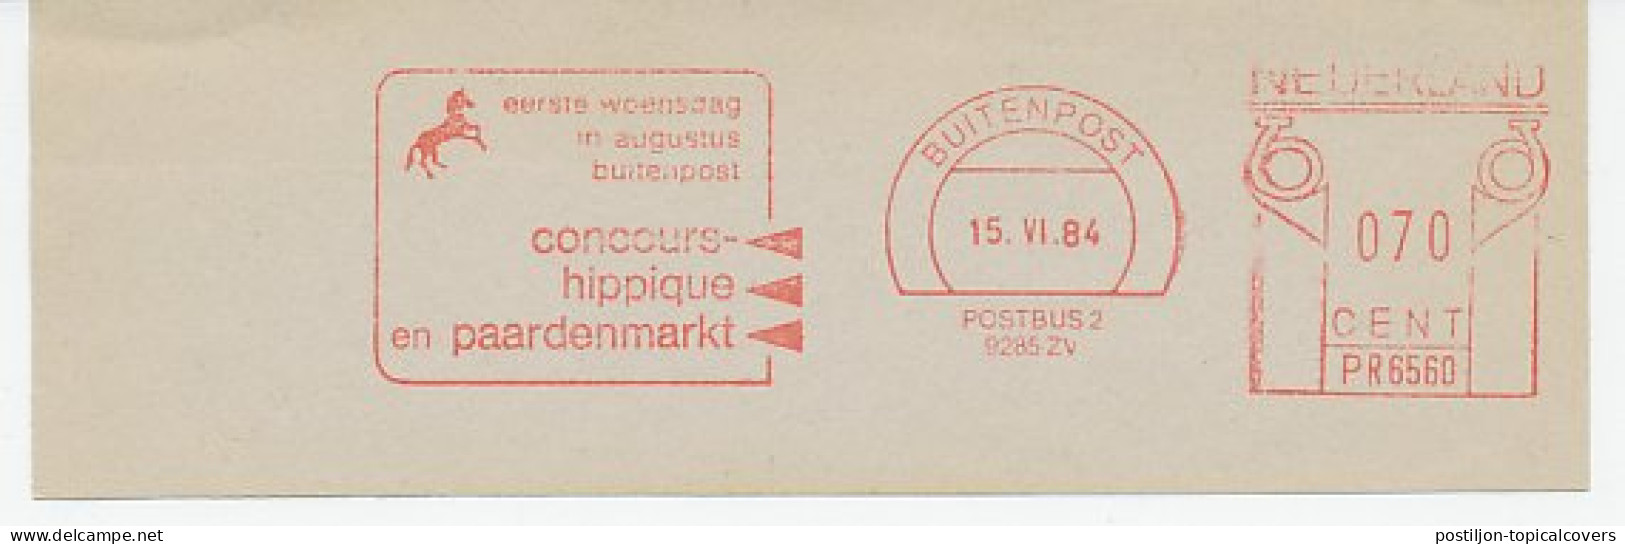 Meter Cut Netherlands 1984 Horse Contest - Horse Market - Concours Hippique - Reitsport